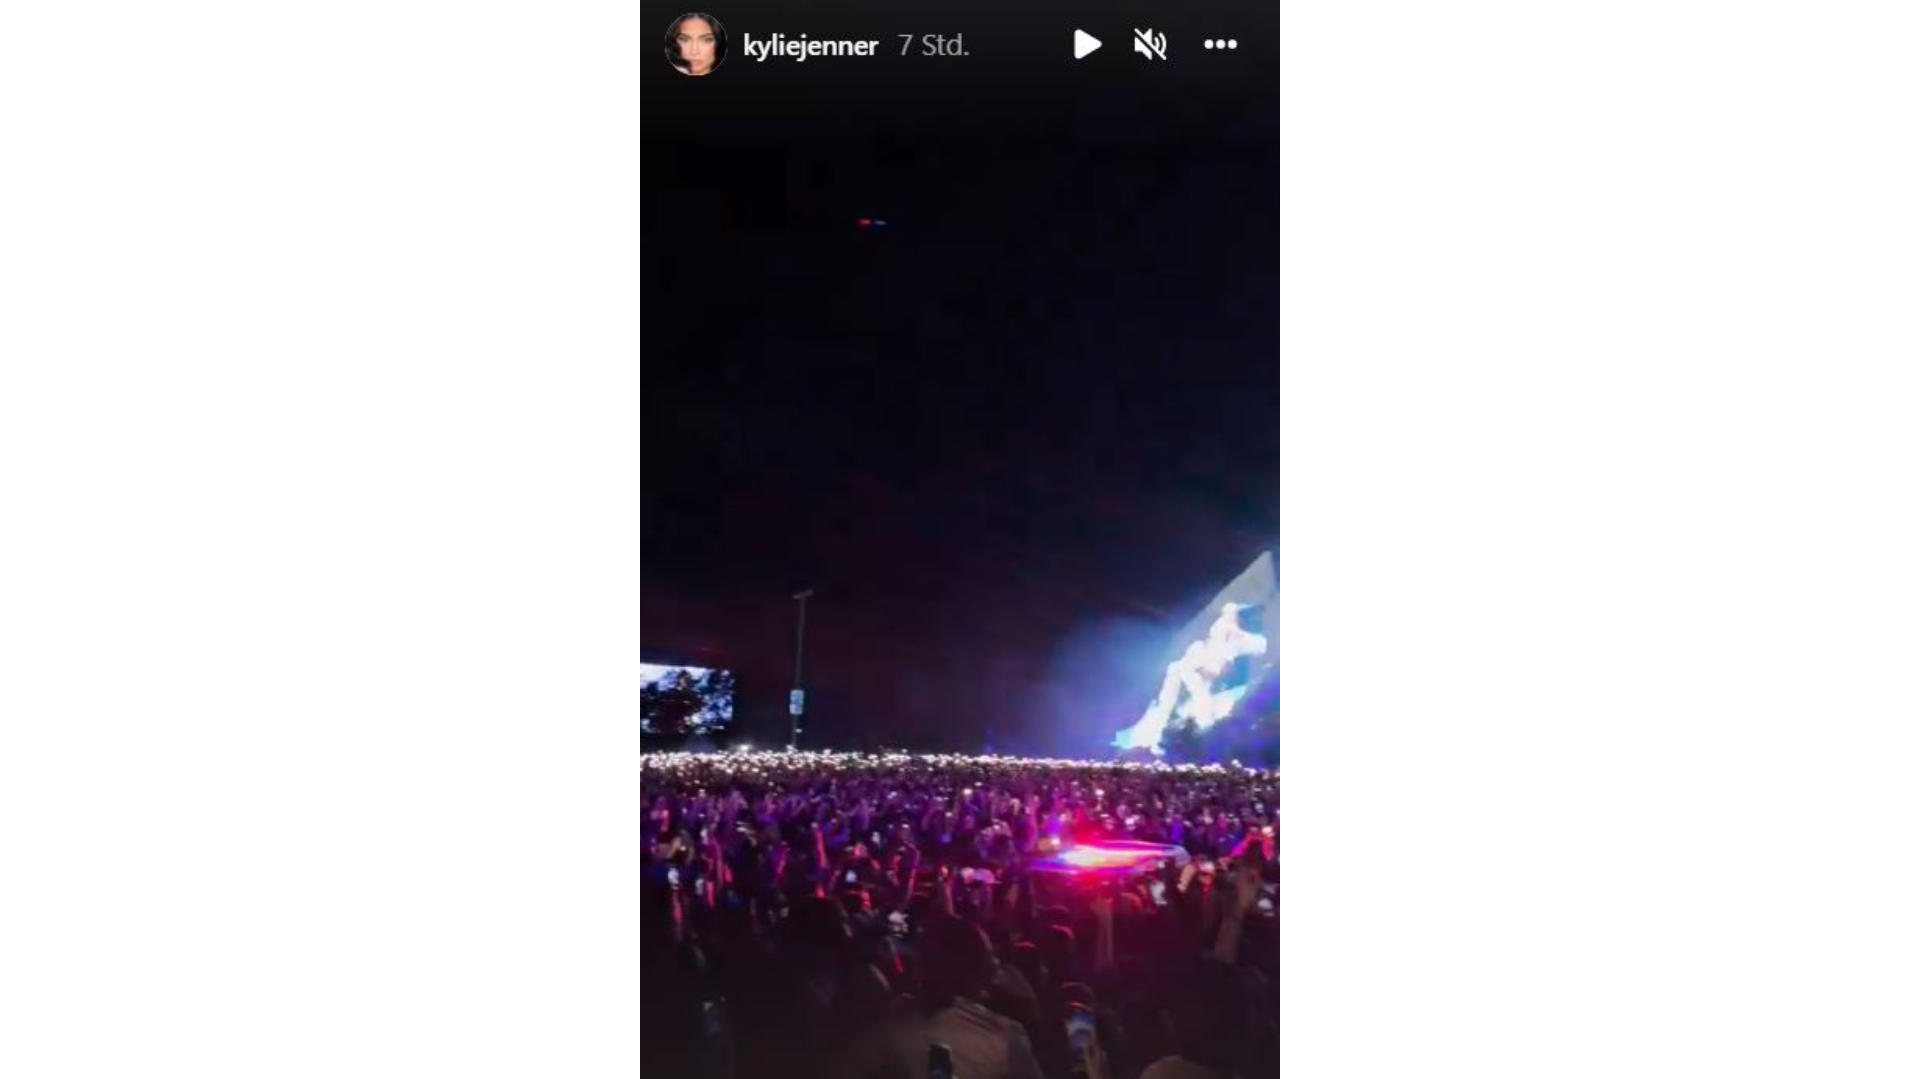 Kylie Jenner filmte den Krankenwagen, der sich den Weg durch die Menge bahnt.